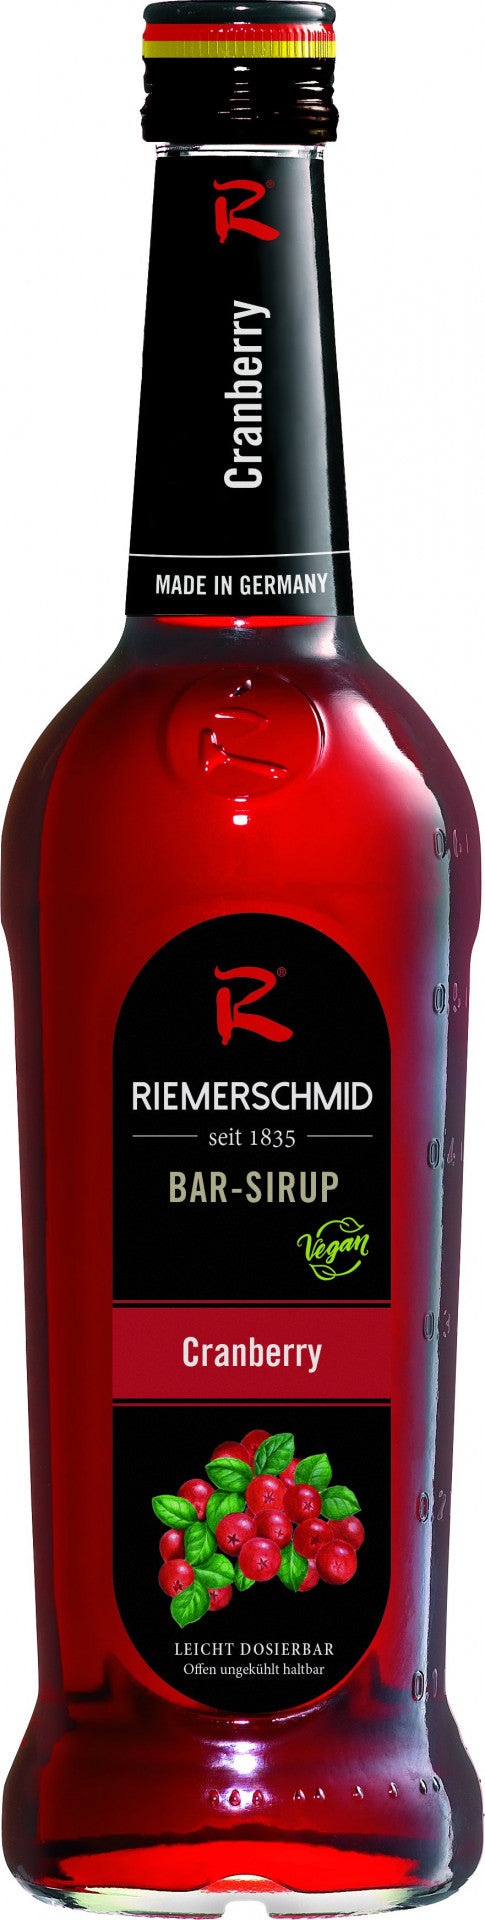 Riemerschmid Bar-Sirup Cranberry Geschmack 0,7L